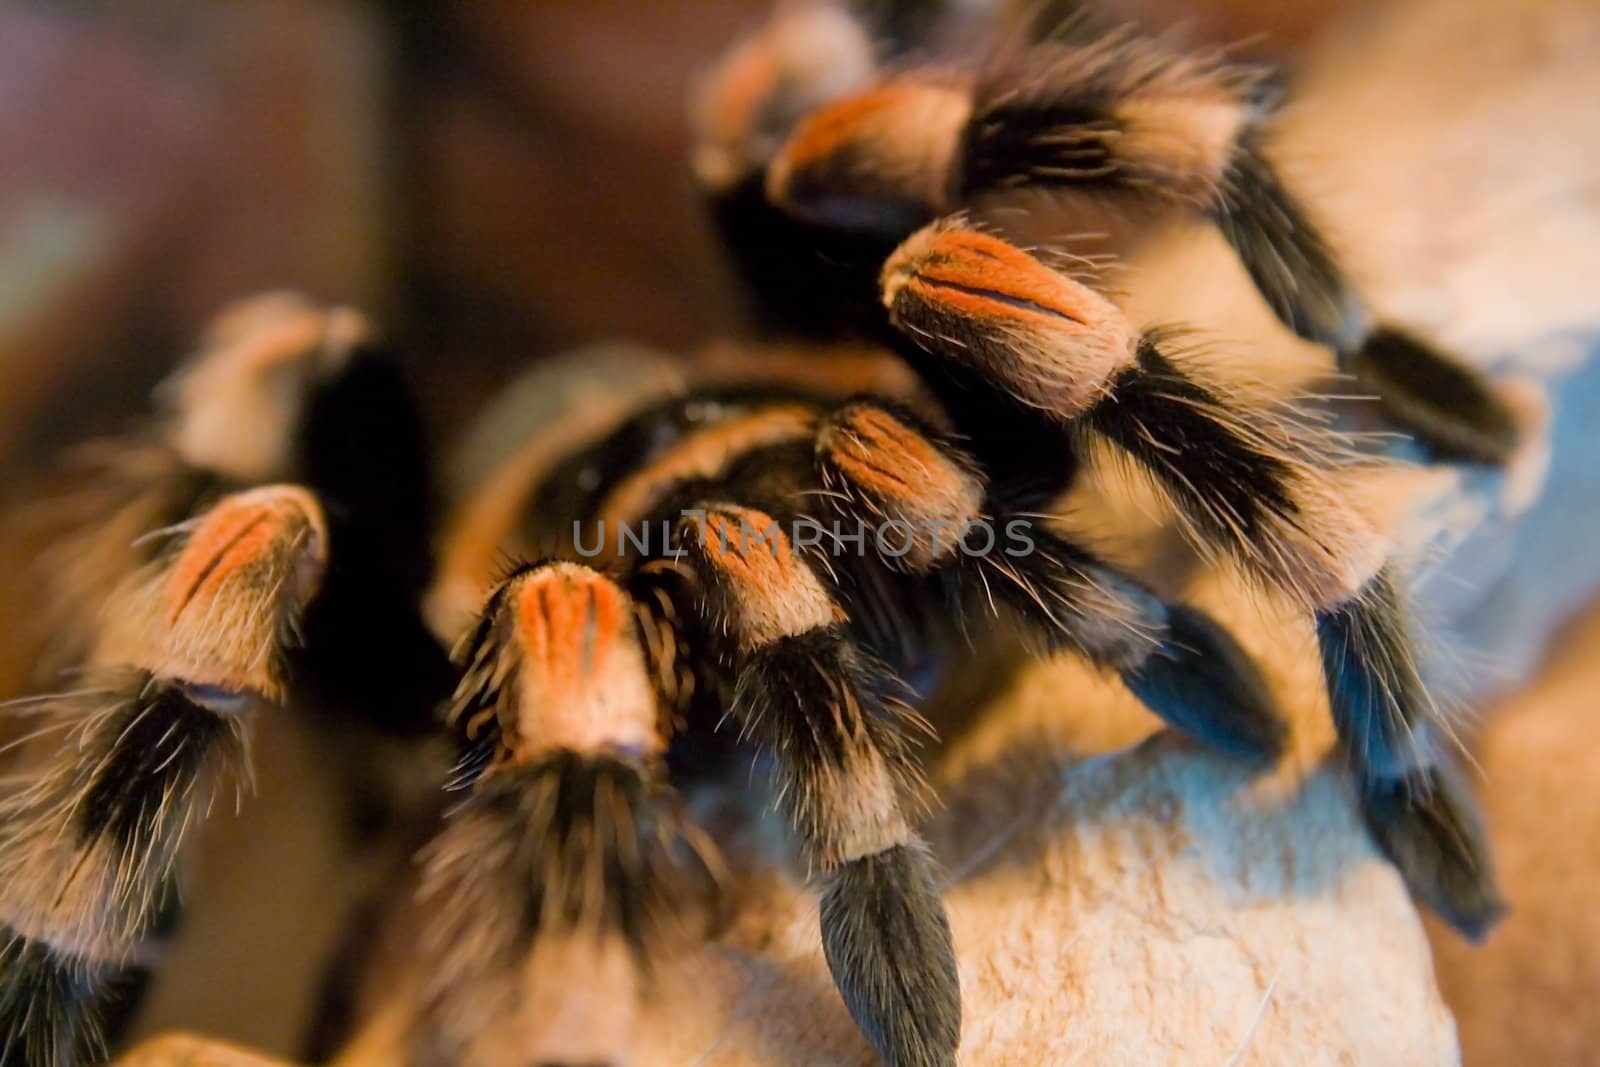 a bird eating spider - brachypelma smithi